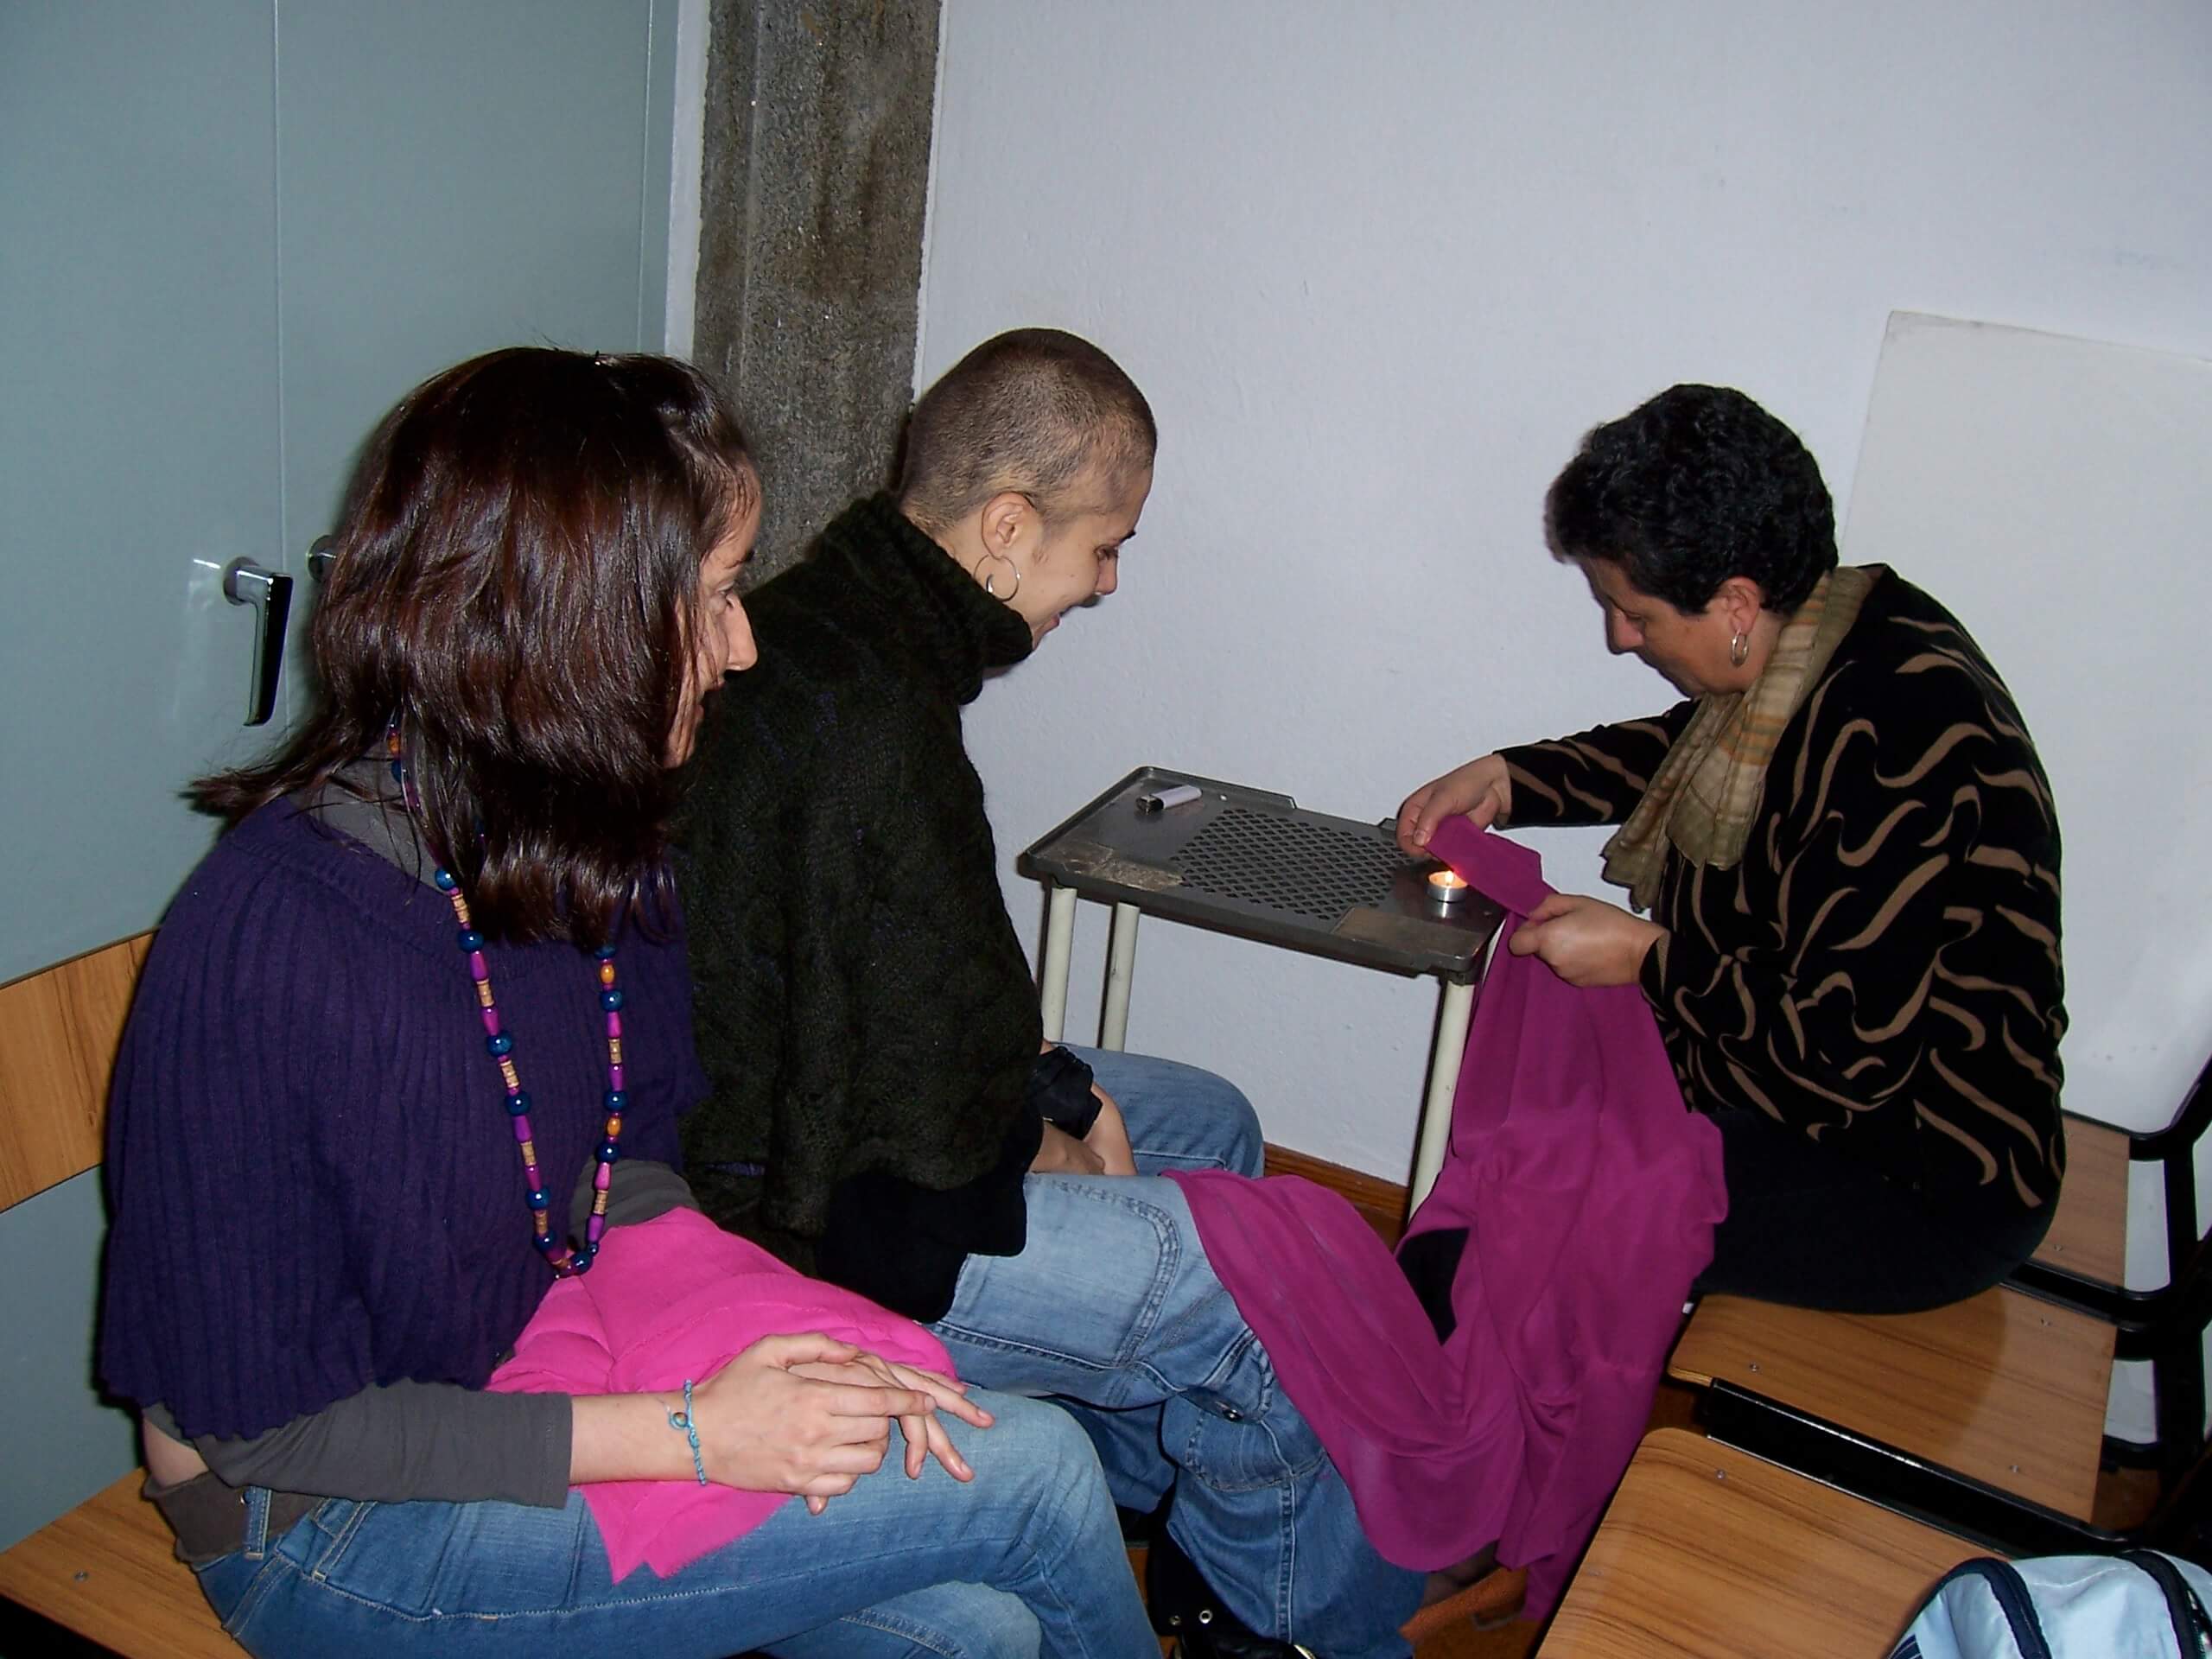 2008'X. Estreno de 'LBaila' - Estela, Pili y Souad con las túnicas